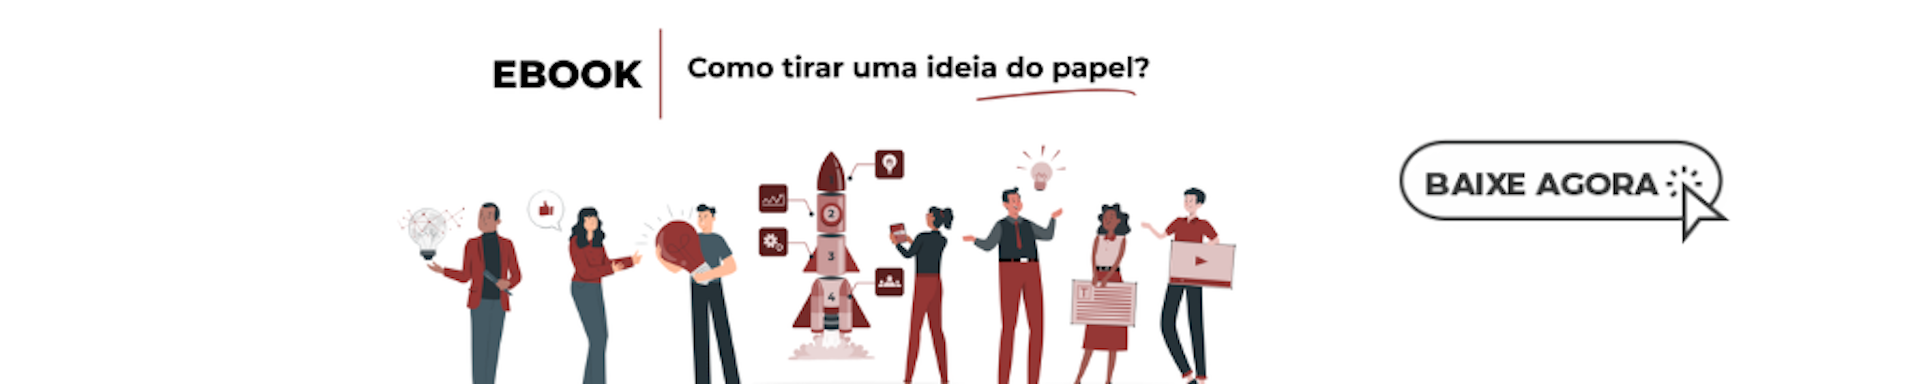 Banner do ebook "Como tirar uma ideia do papel".